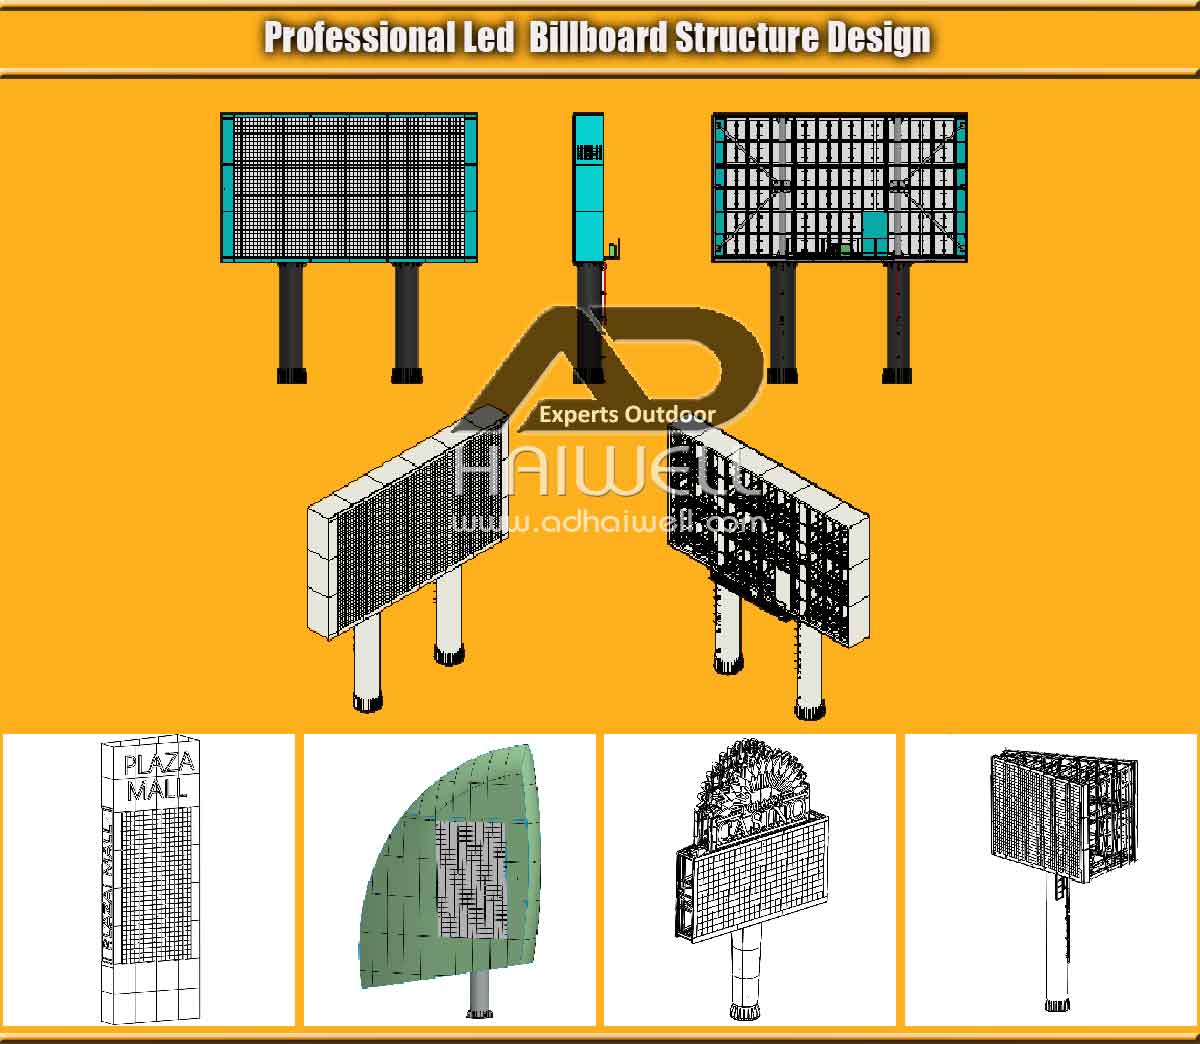 Diseño de estructura de cartelera LED profesional